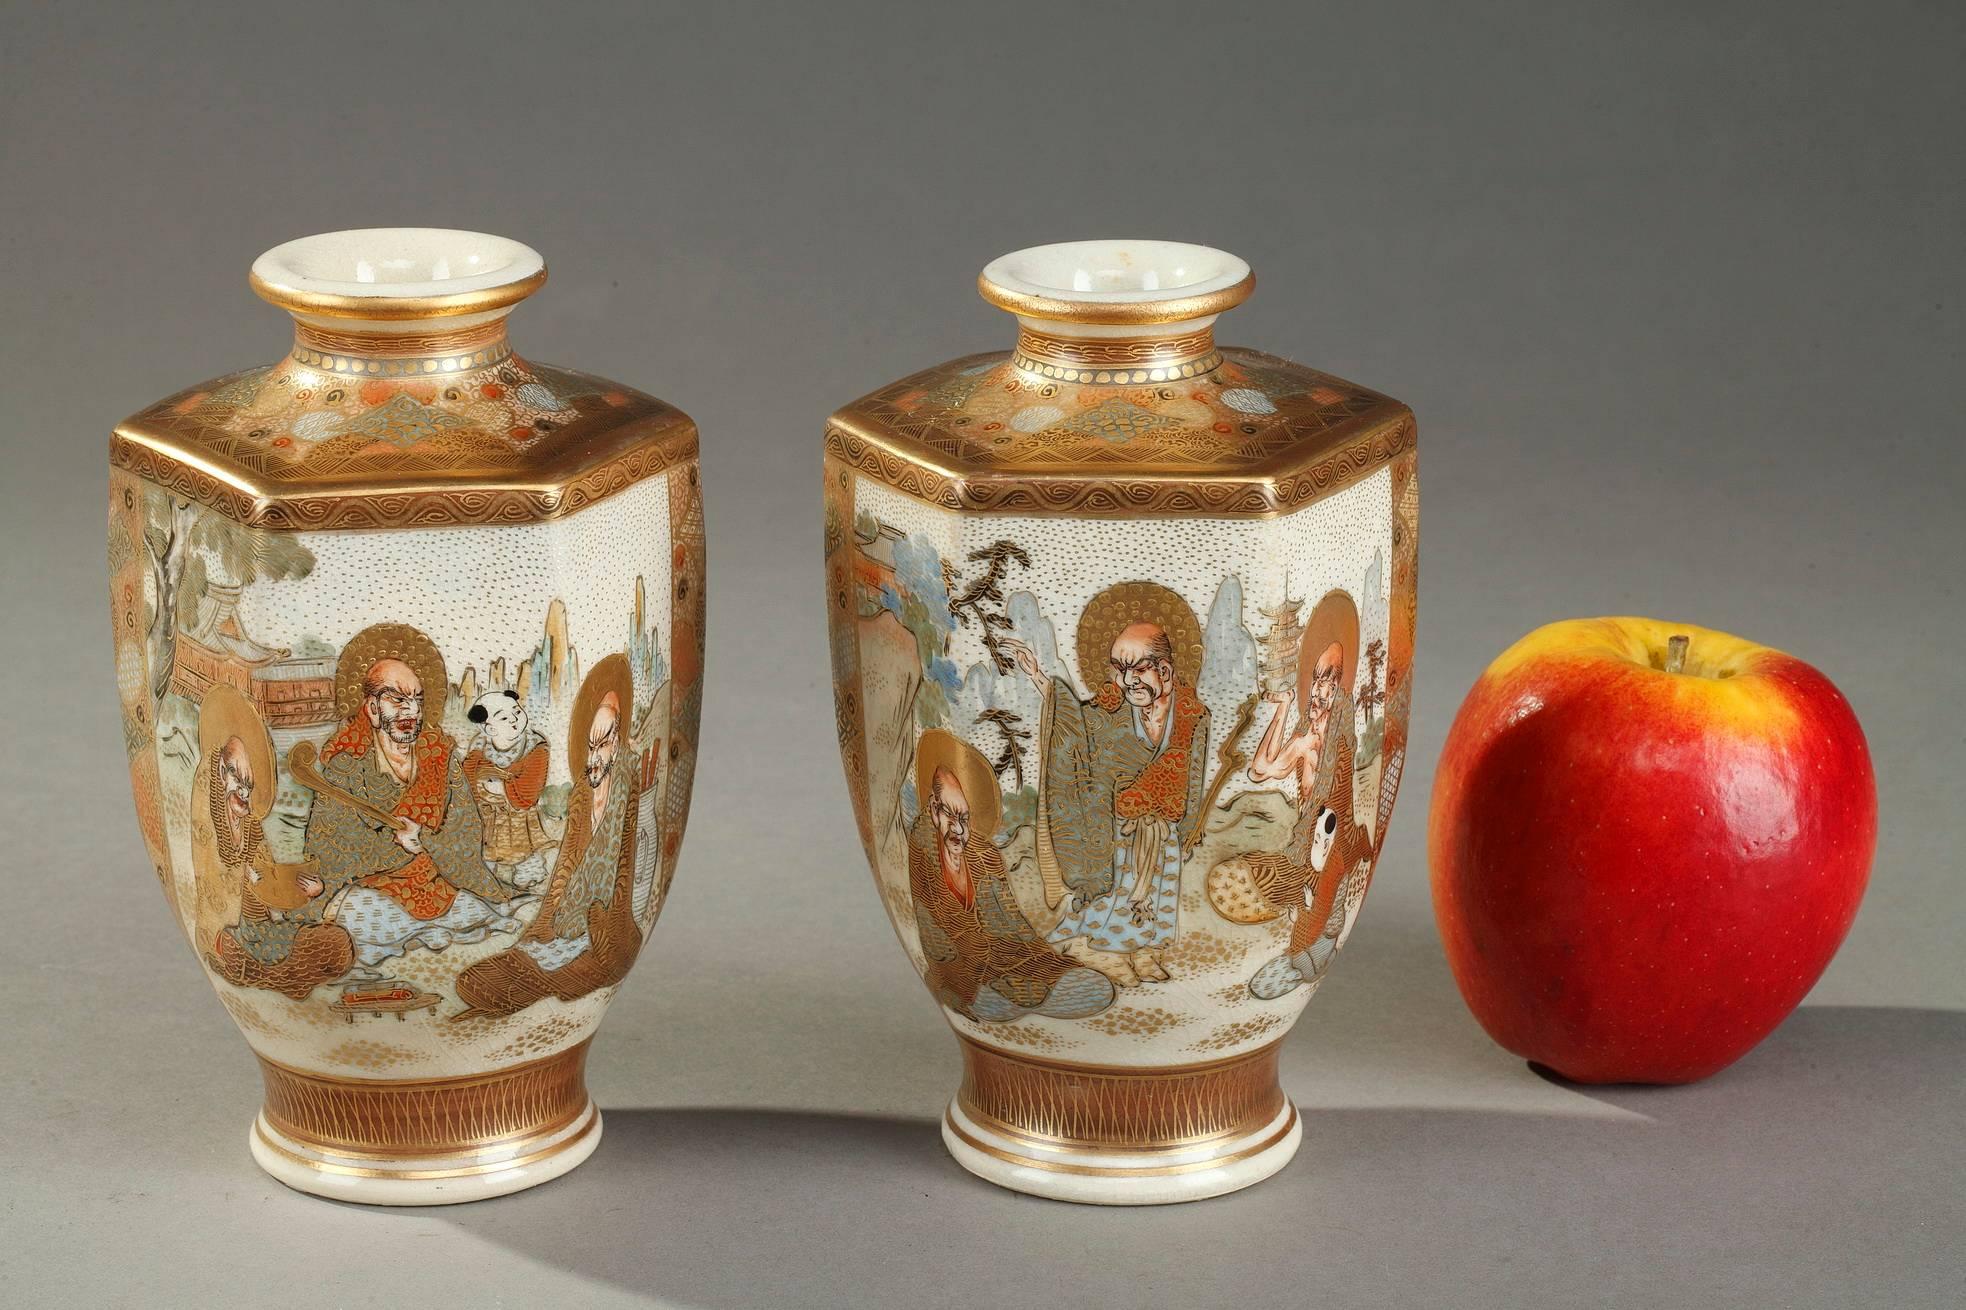 Deux vases hexagonaux en porcelaine de Satsuma peints en émaux polychromes et or. La panse est décorée de caractères japonais complexes dans un paysage, le cou et l'épaule de motifs géométriques. Chaque vase porte la marque Satsuma en caractères